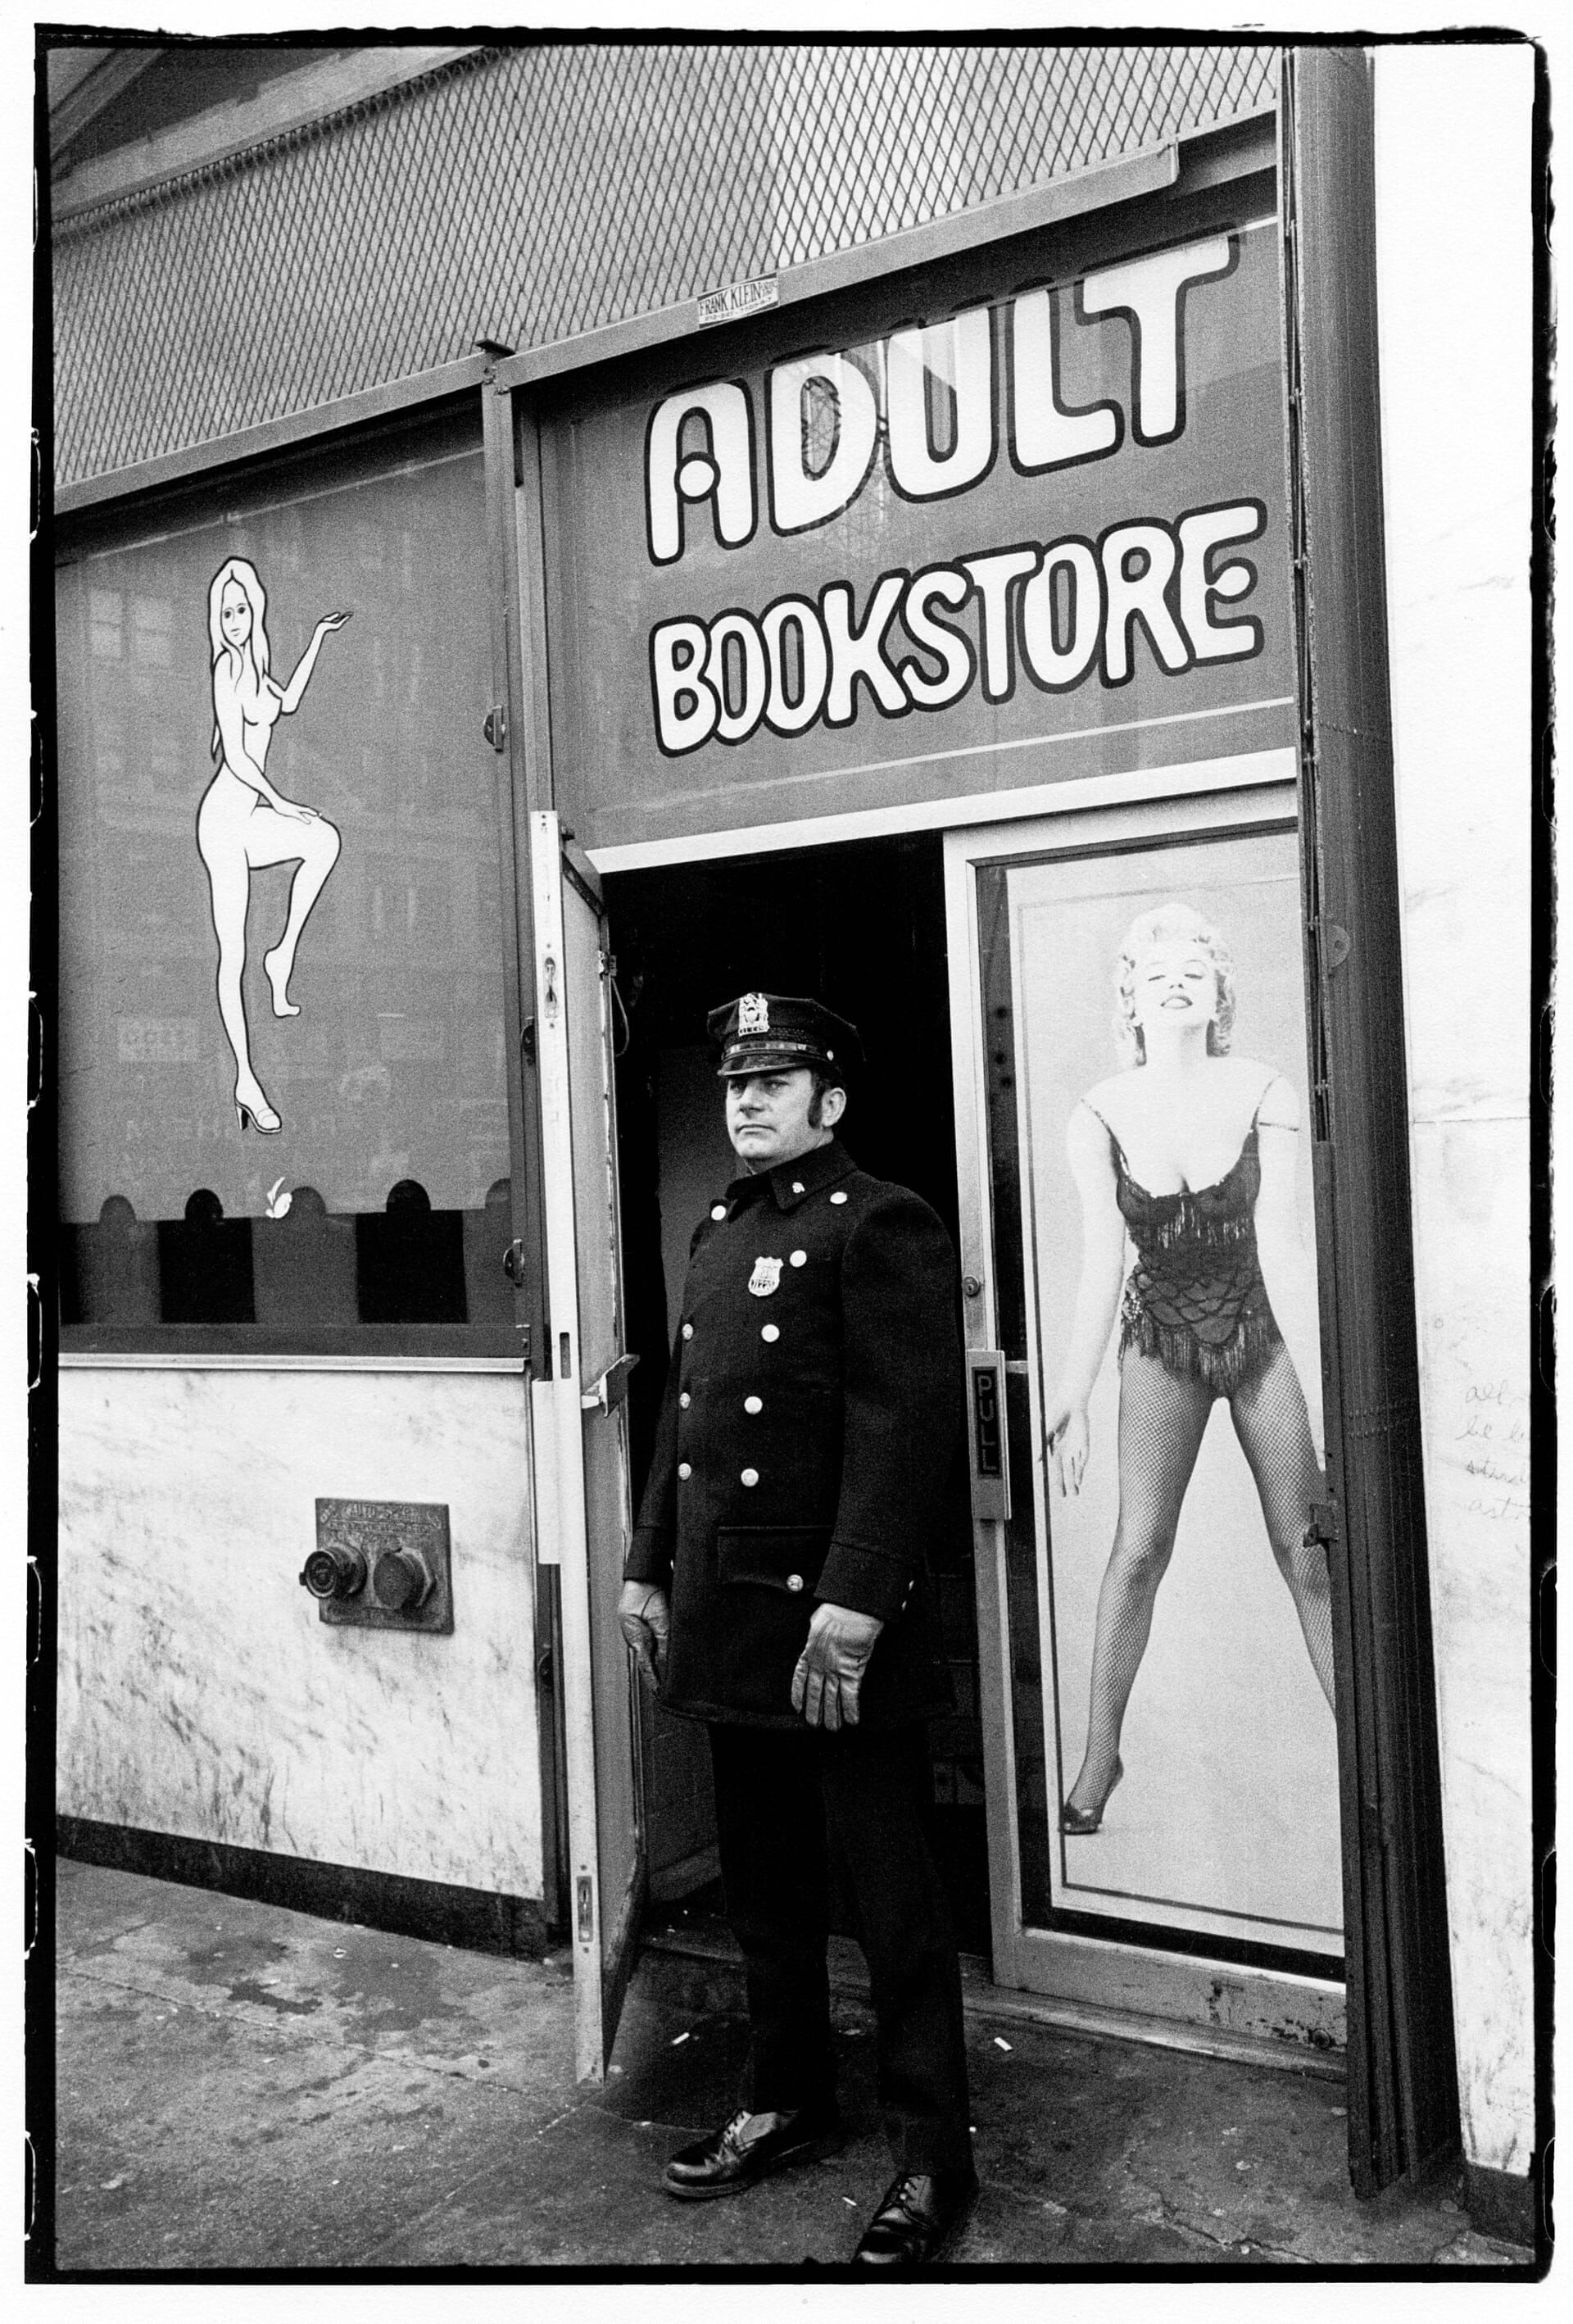 Таймс-сквер, Нью-Йорк, 1976. Фотограф Дэвид Годлис